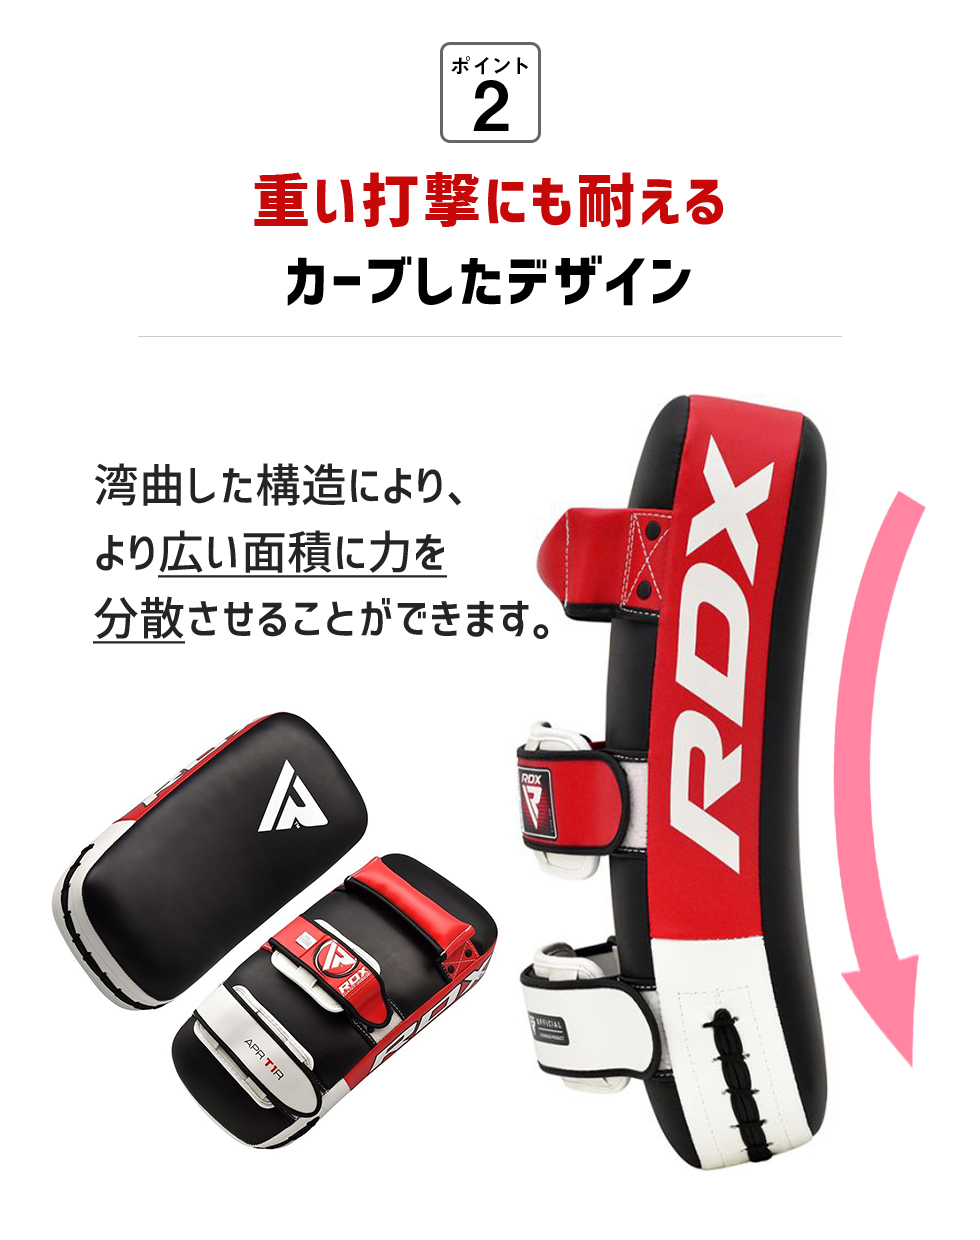 キックミット 1個入り RDX 公式 キックボクシング 総合格闘技 MMA 